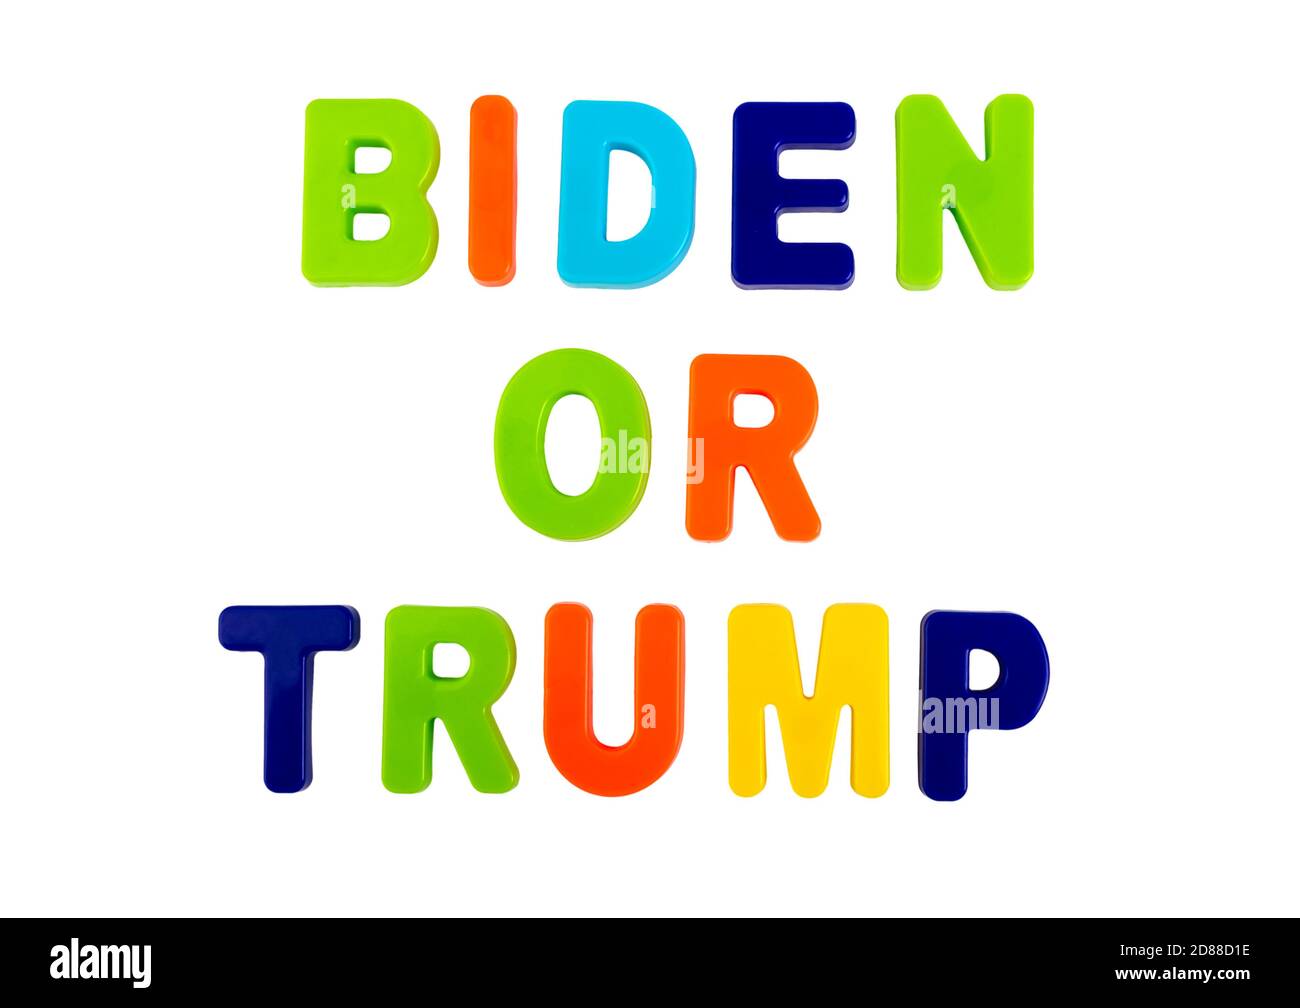 Wer wird der neue Präsident der Vereinigten Staaten? Trump oder Biden? Die Namen der Präsidentschaftskandidaten in Plastikbuchstaben auf einem weißen geschrieben Stockfoto